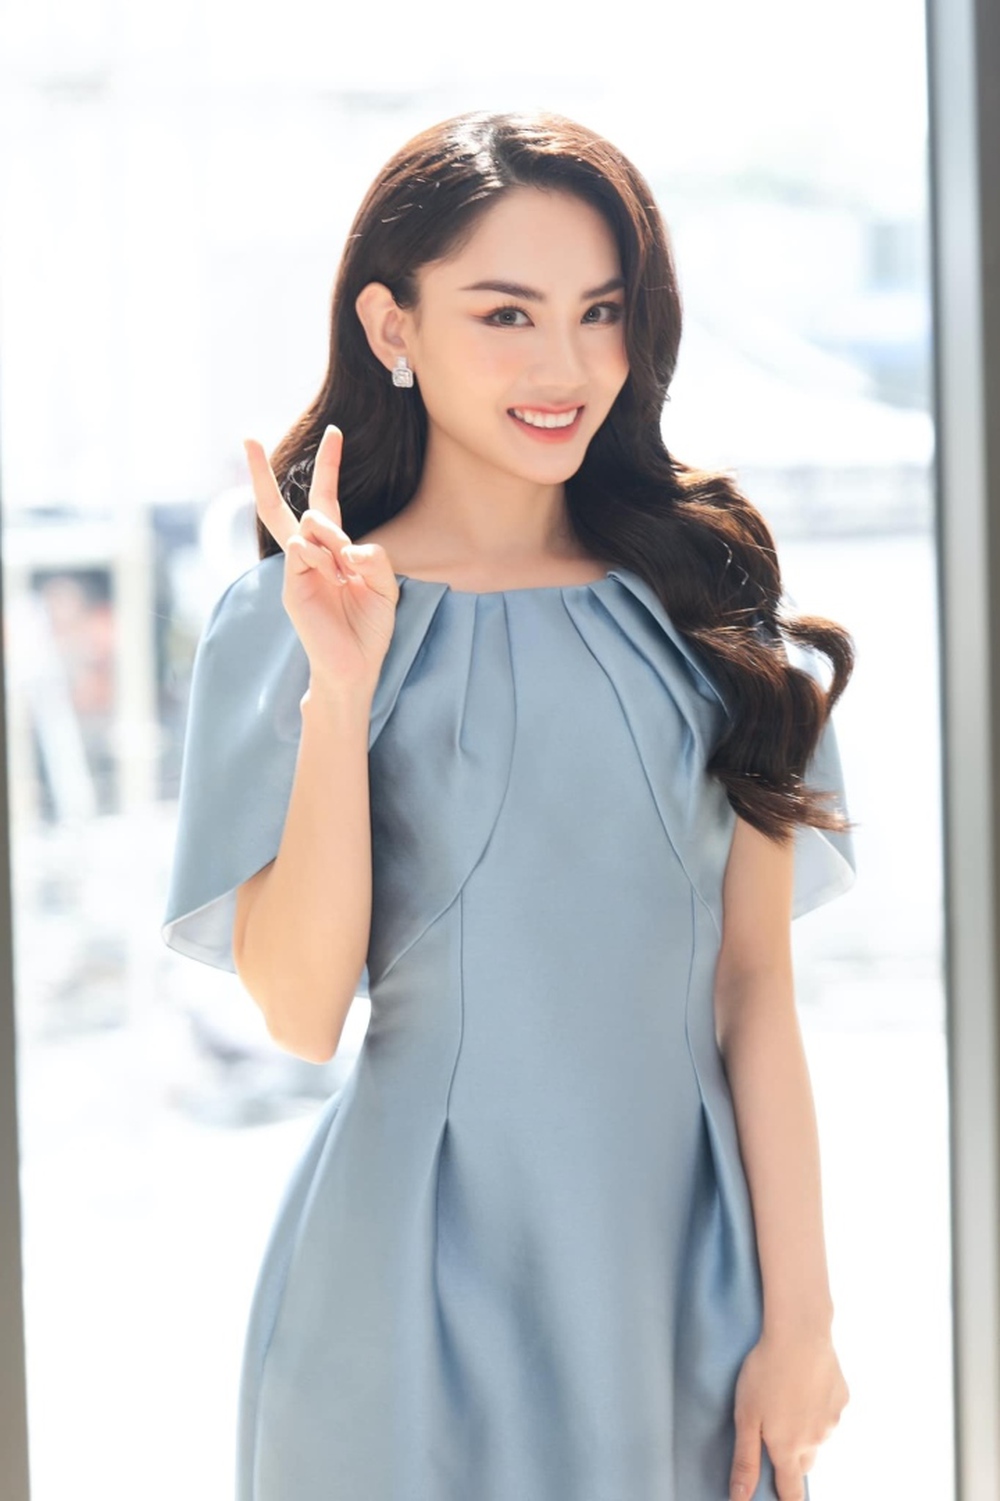 Sắc vóc cùng học vấn đáng nể của tân Hoa hậu Thế giới Việt Nam 2022 - ảnh 6